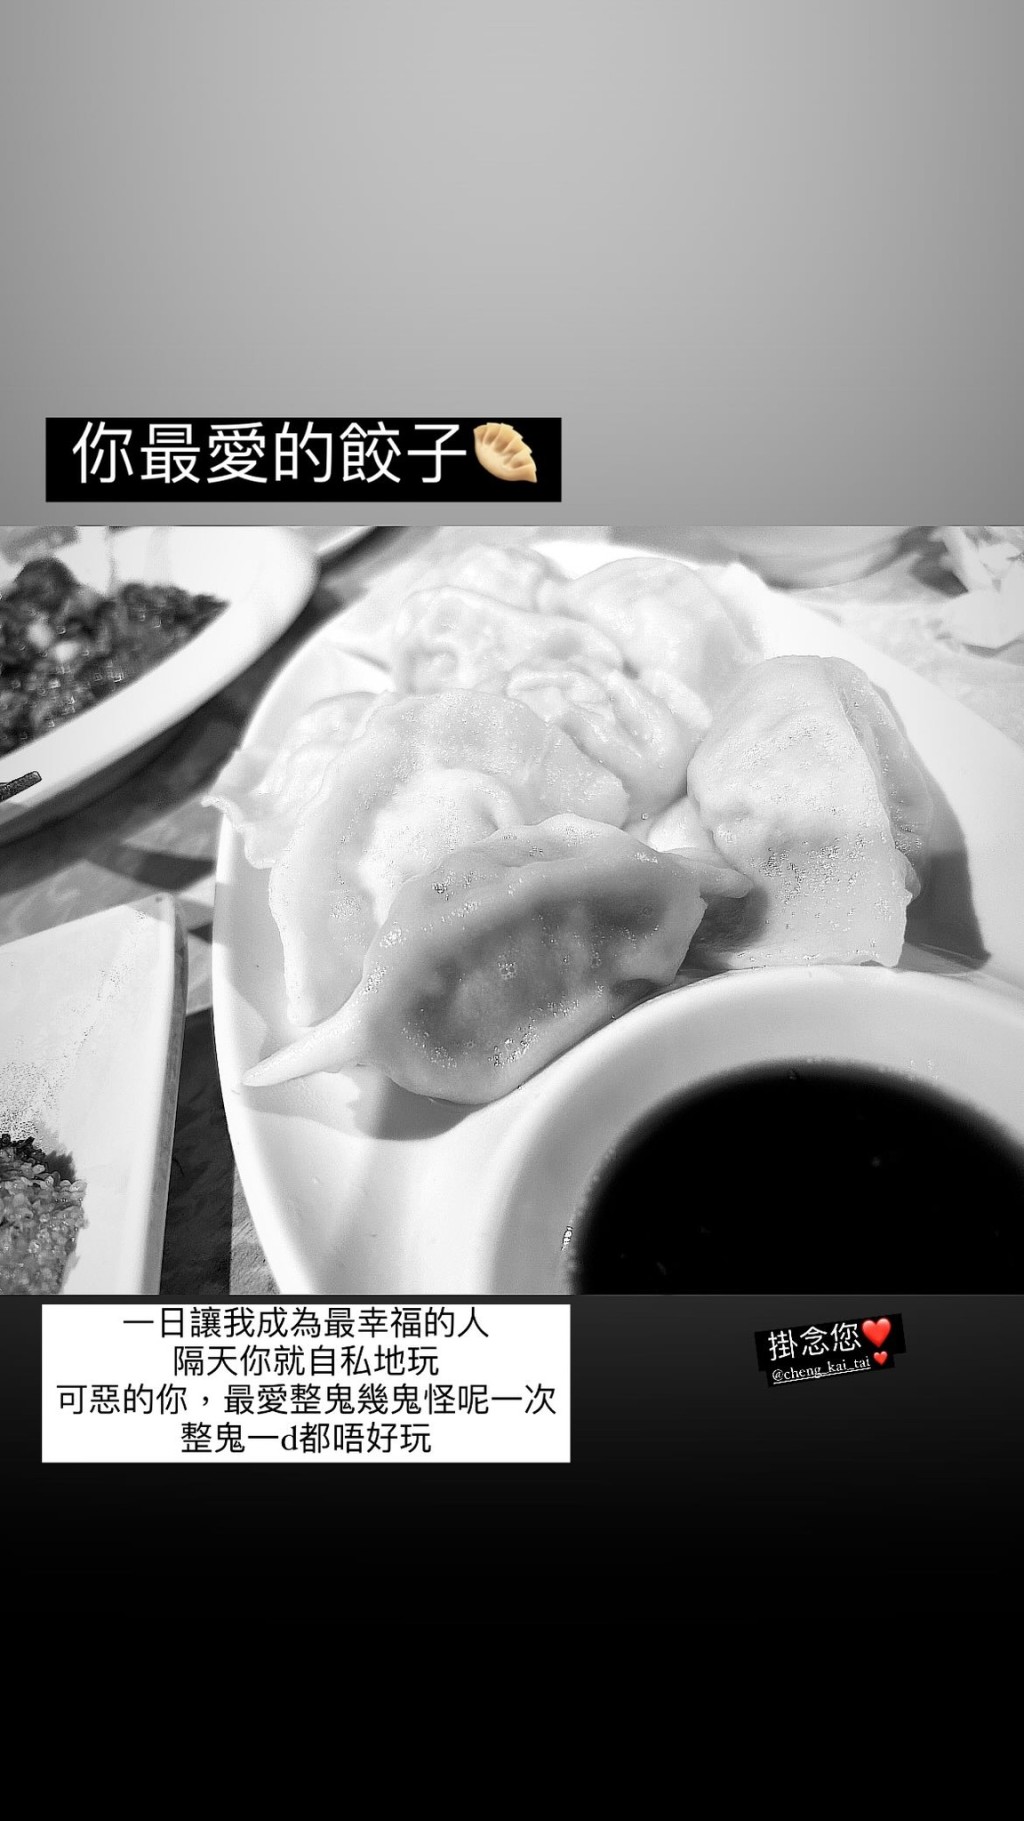 王雁芝昨日在IG Story贴出郑启泰最爱的饺子。